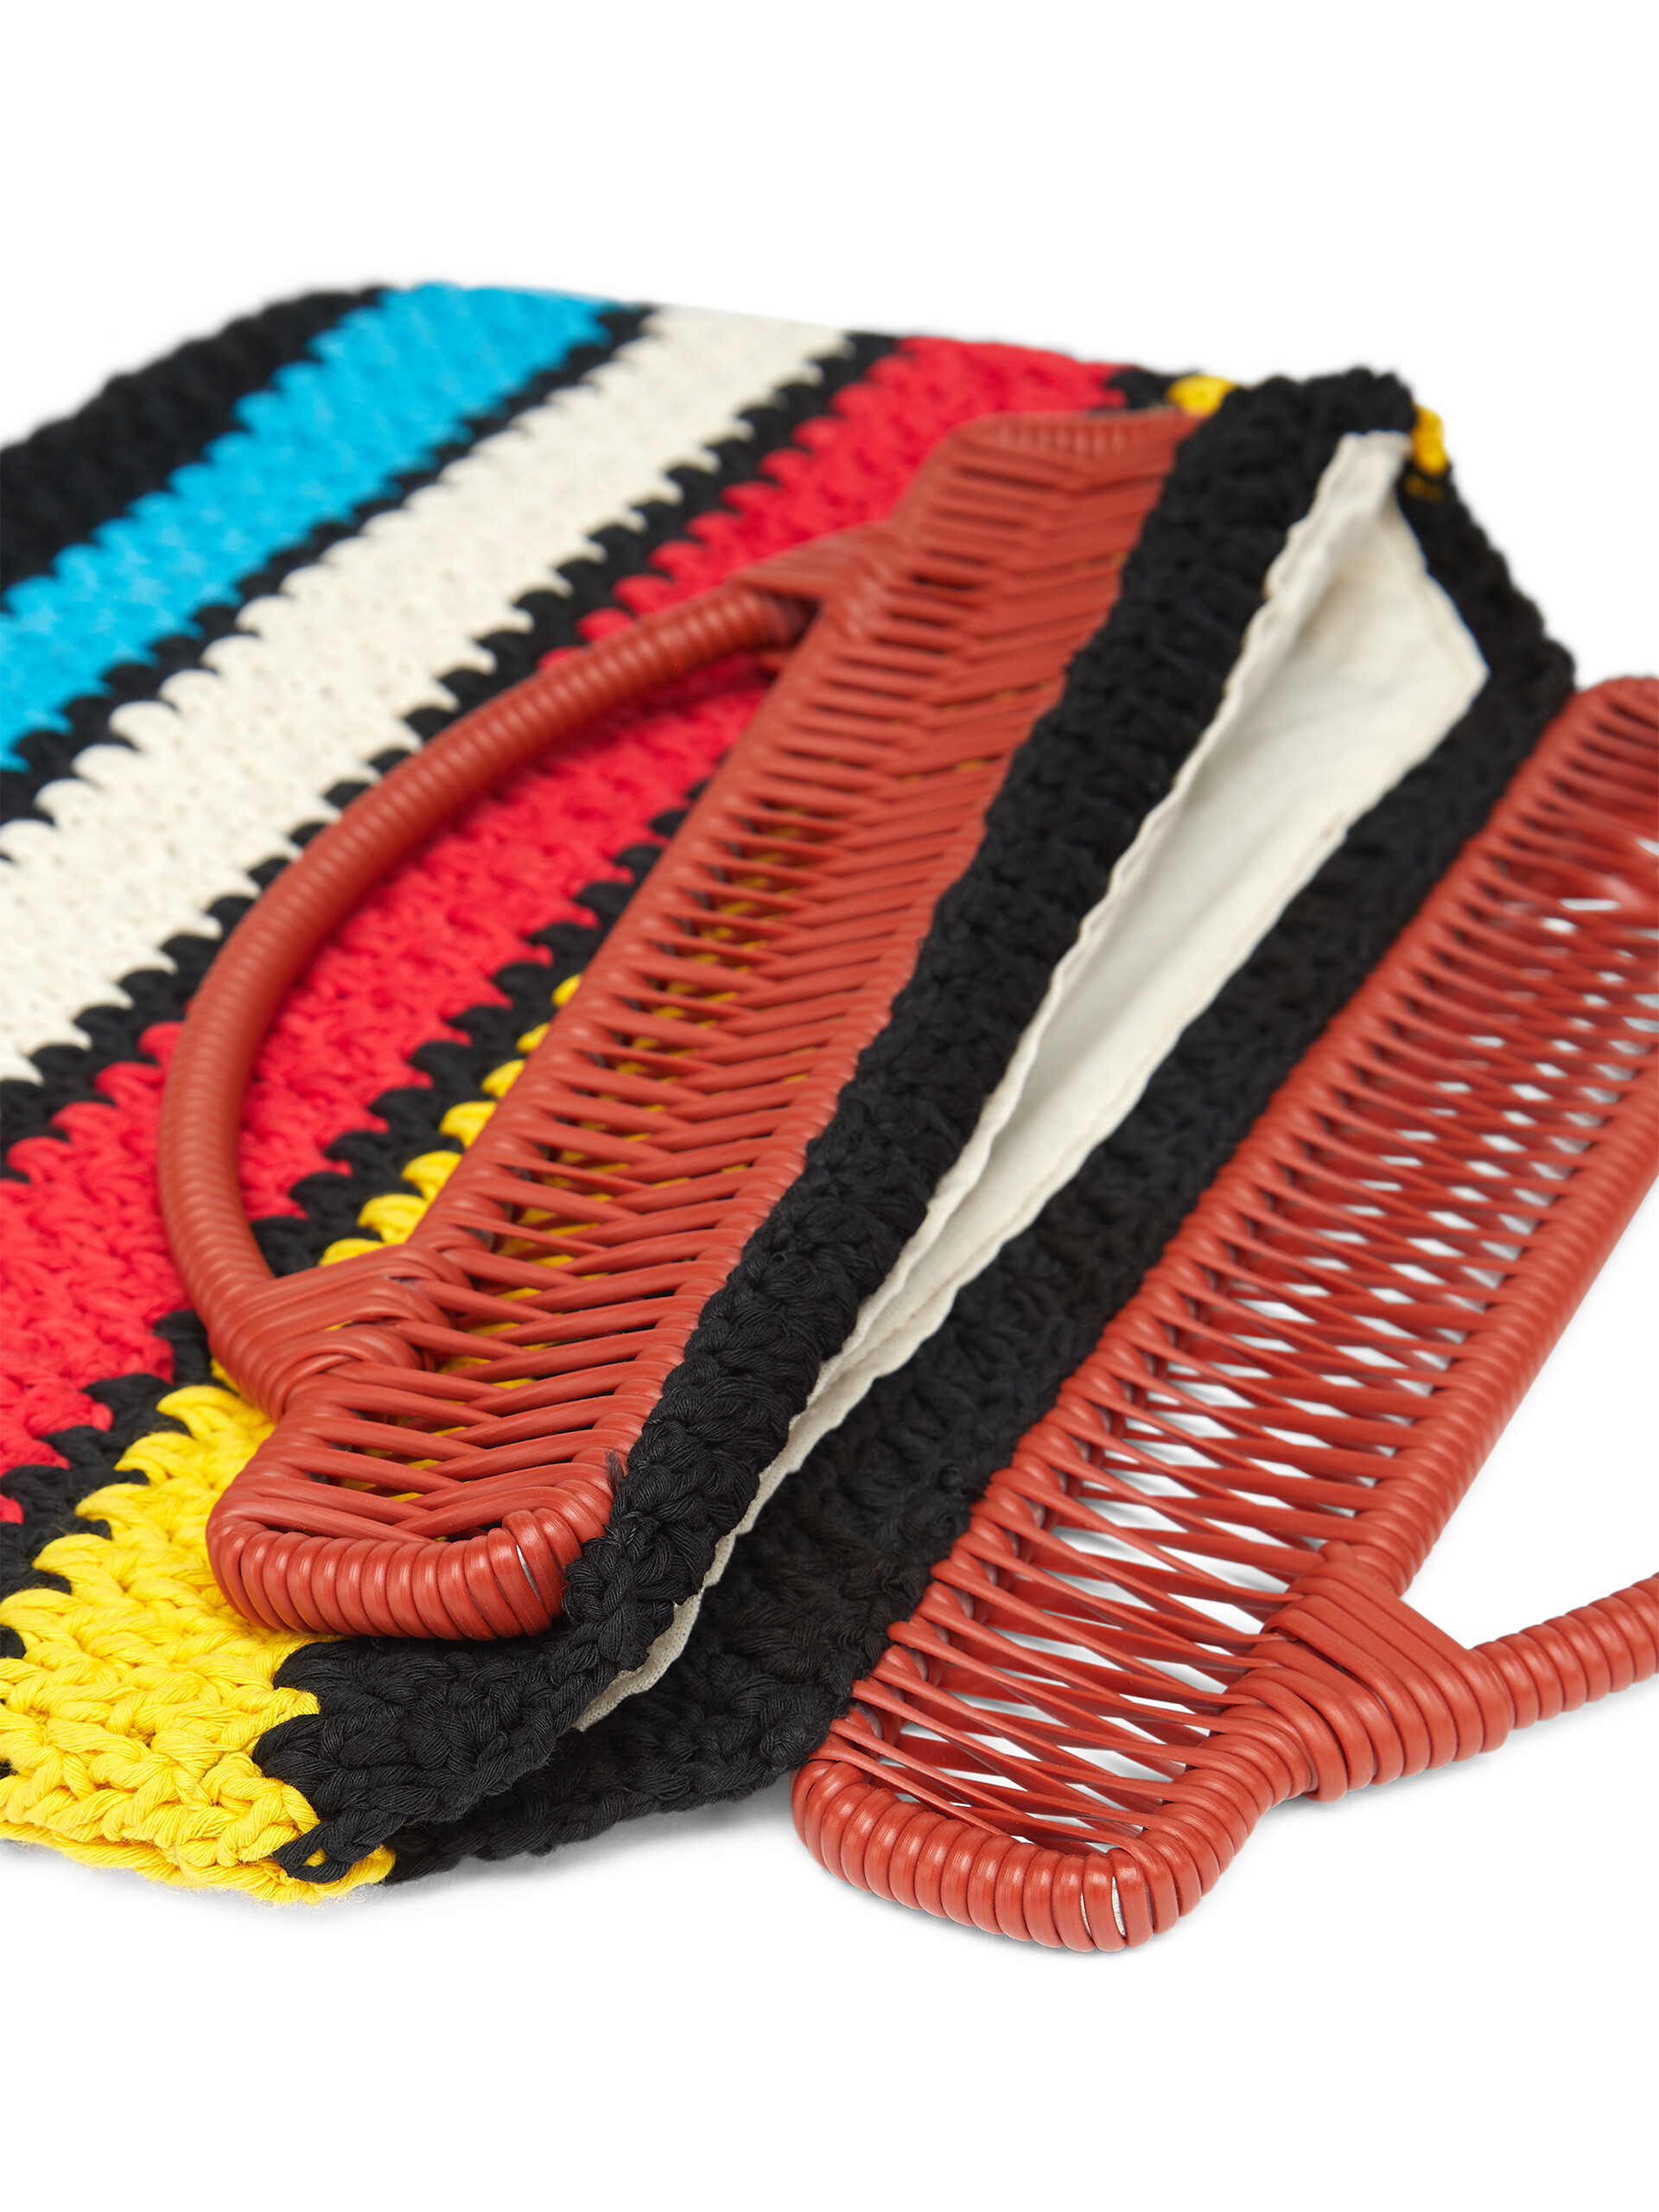 Borsa cerniera MARNI MARKET con motivo a righe in misto cotone crochet multicolore - Arredamento - Image 4